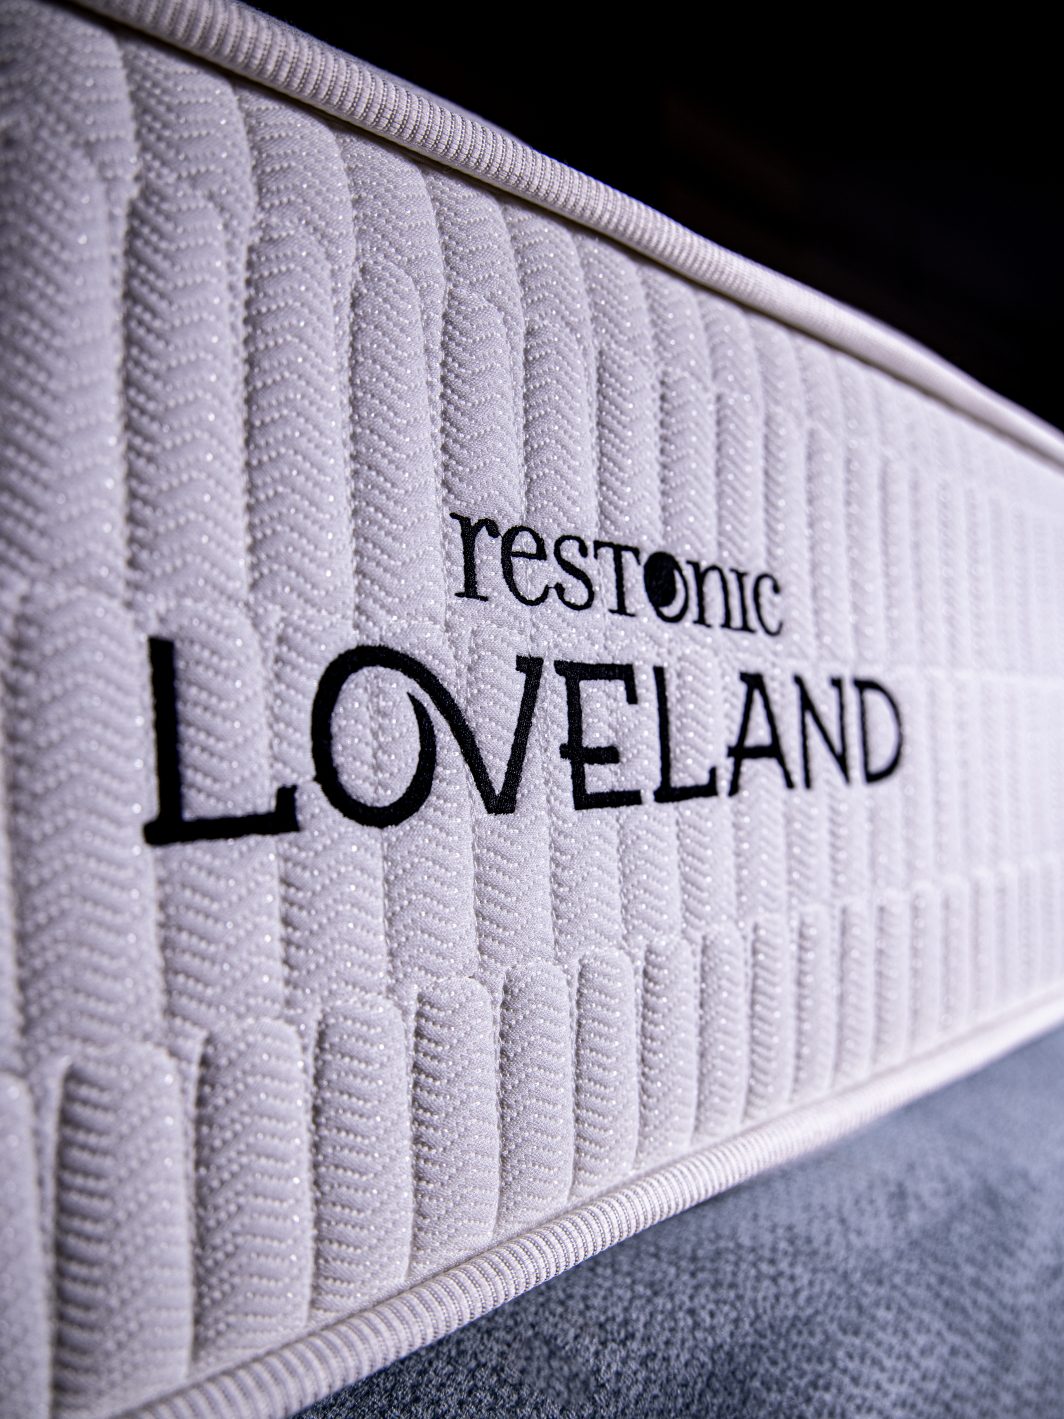 Best Loveland mattress in dubai